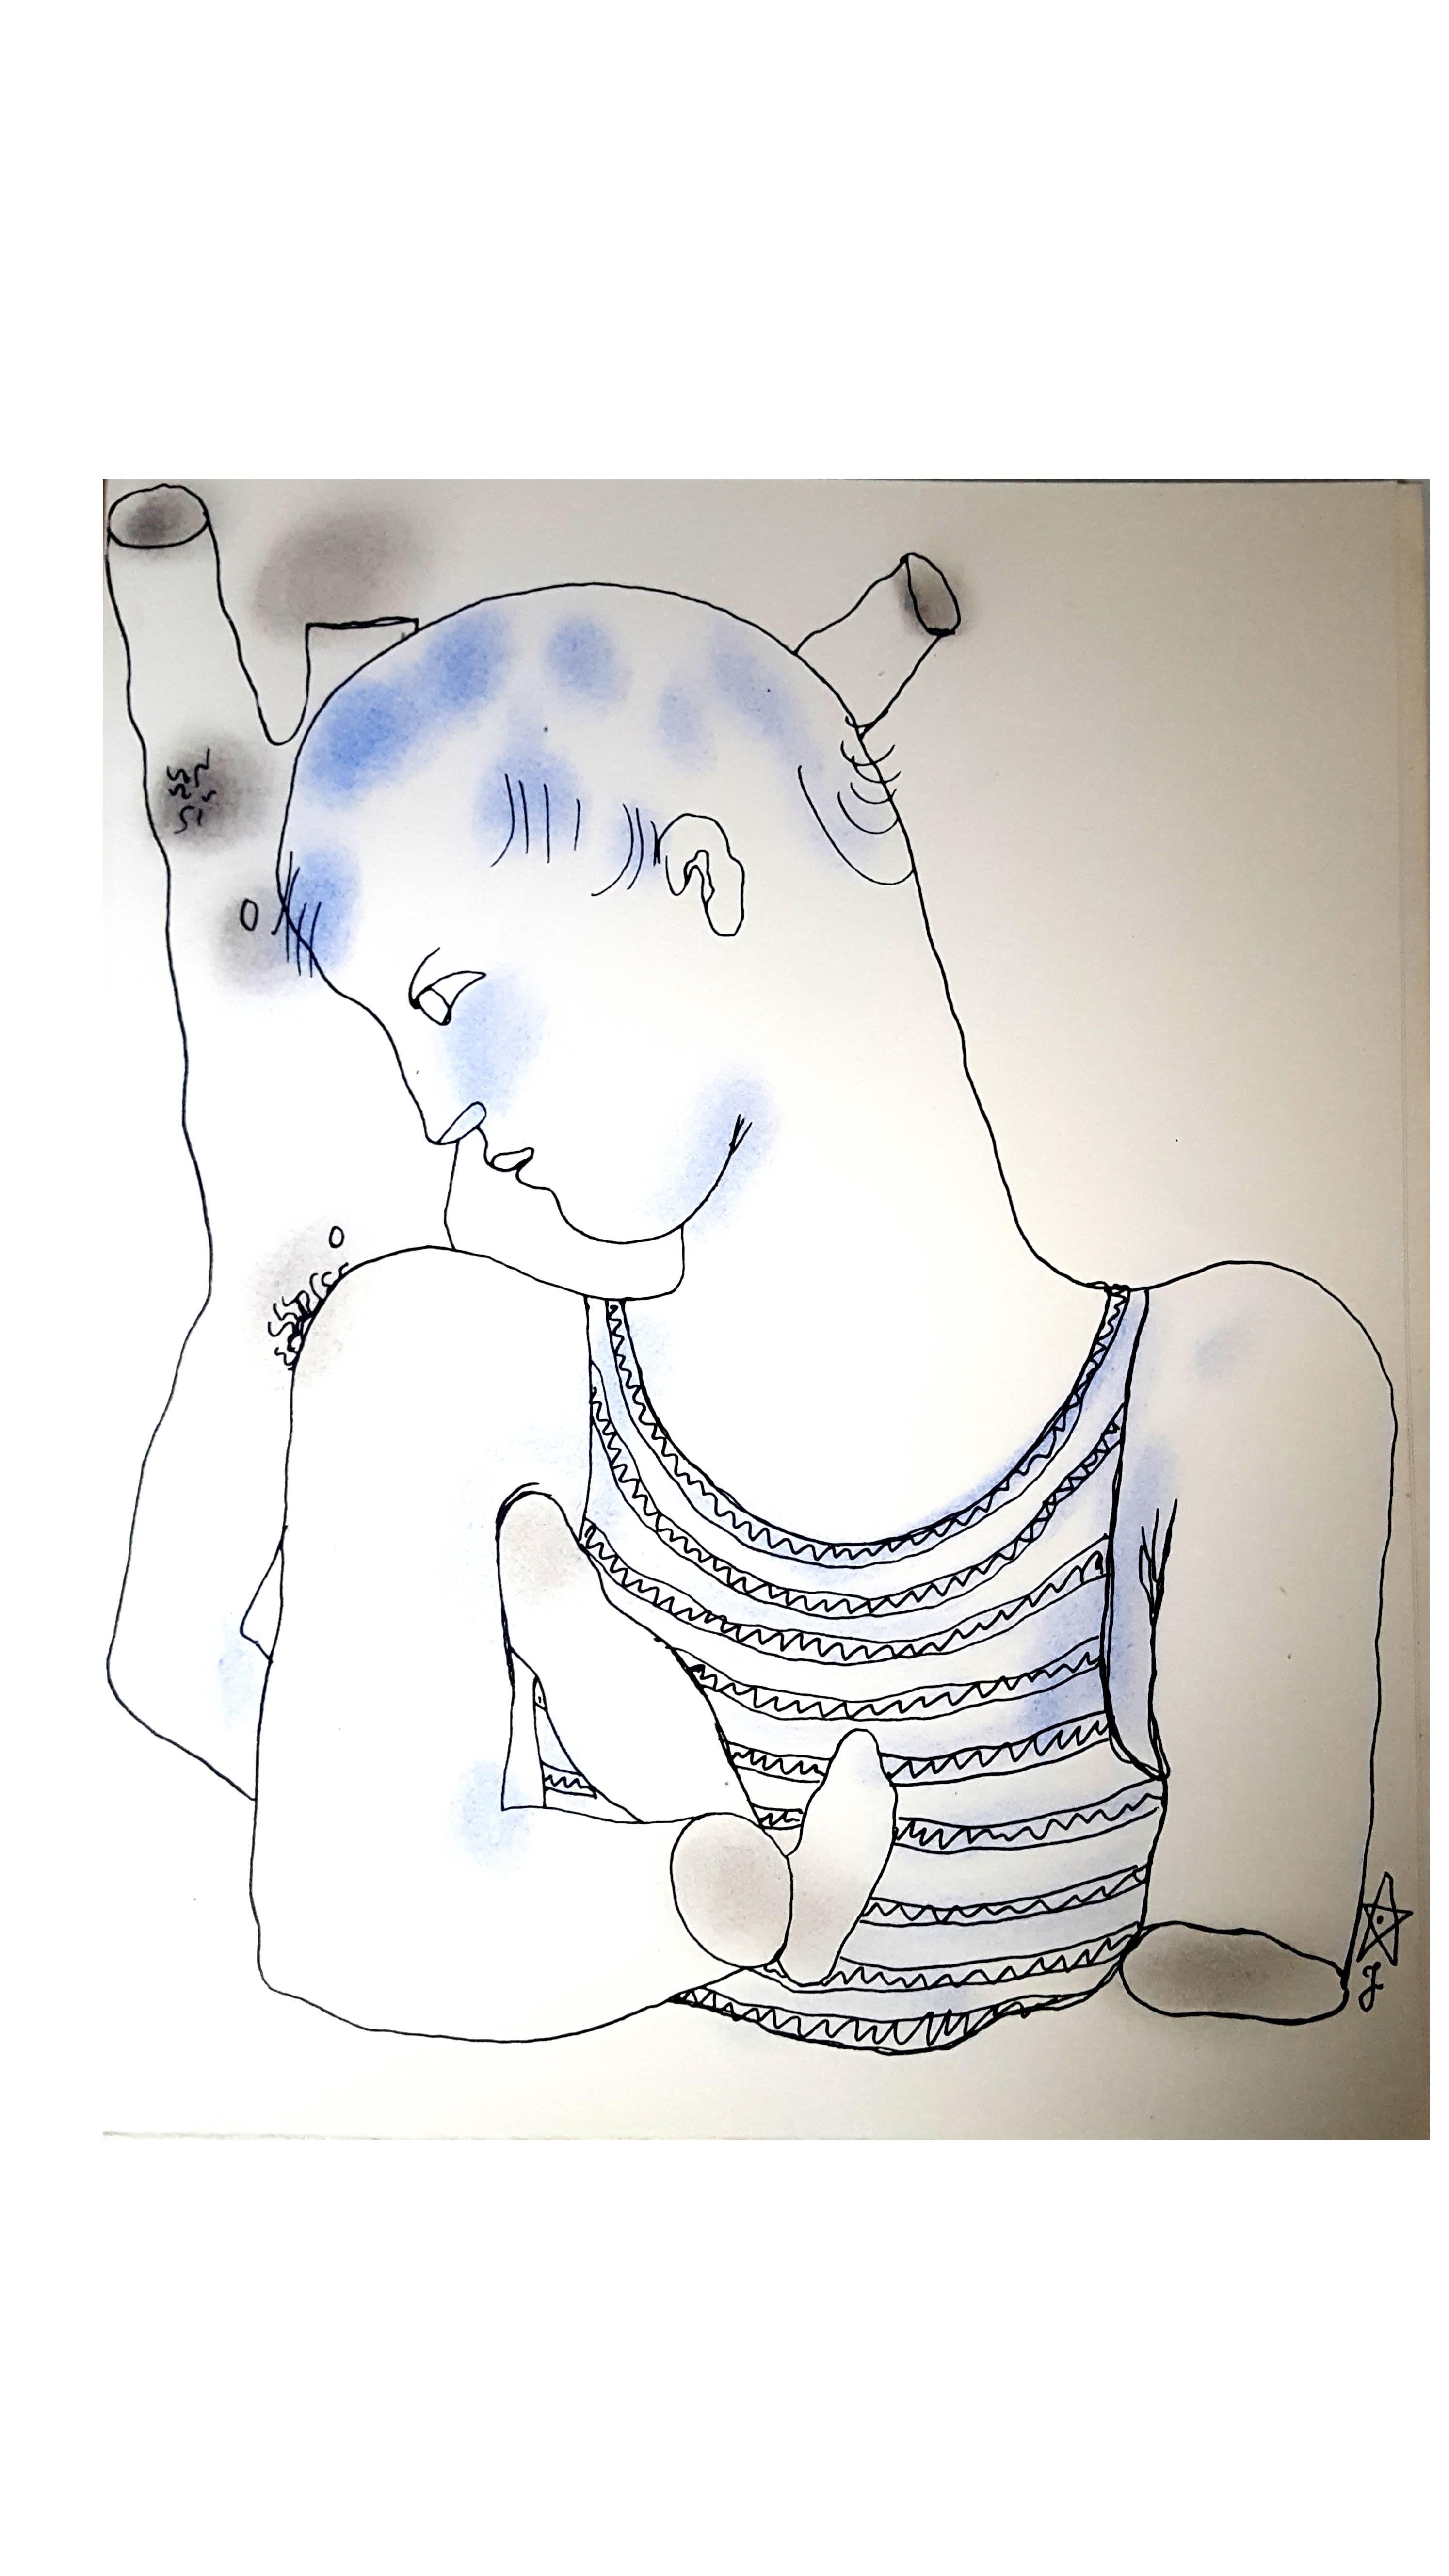 Jean Cocteau
Livre blanc - Autobiographie sur la découverte par Cocteau de son homosexualité. Le livre a d'abord été publié anonymement et a créé un scandale.
Lithographie originale colorée à la main
Dimensions : 28.4 x 22,8 cm
Edition de 380